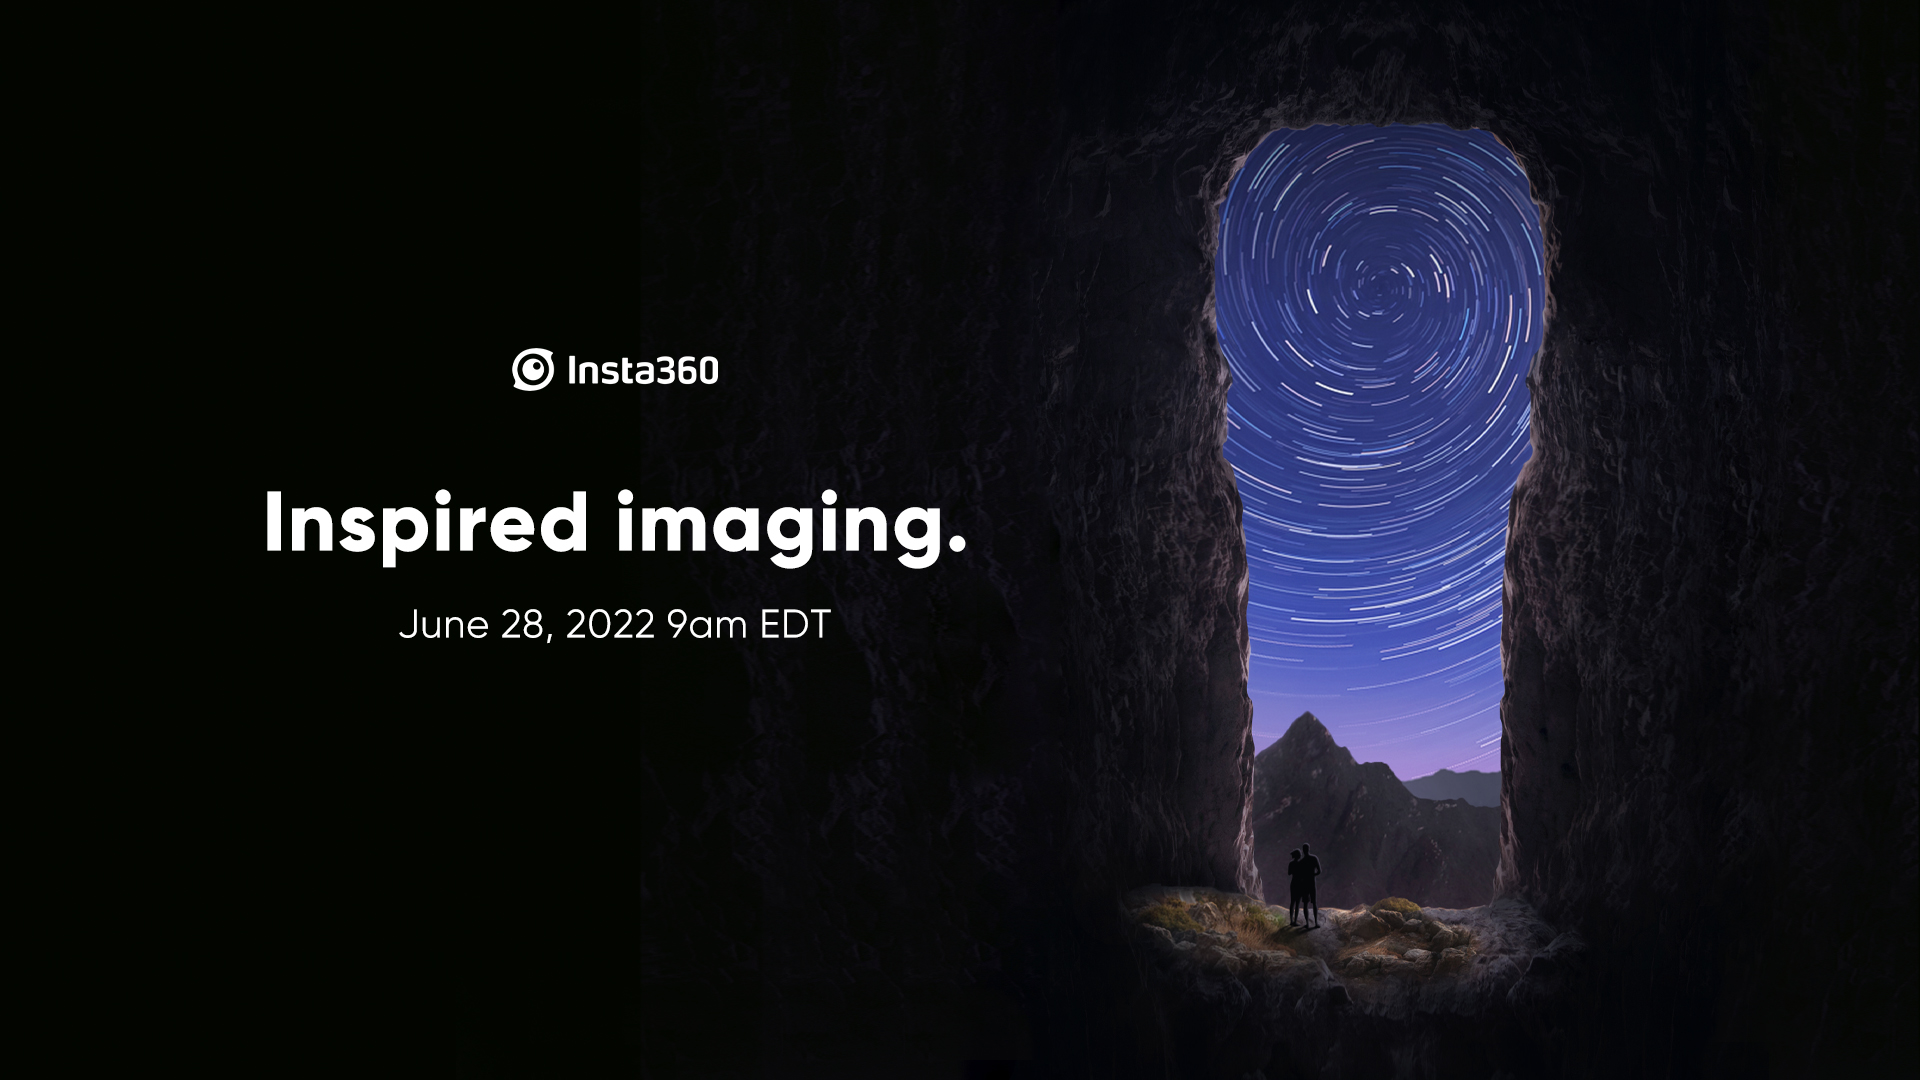 Le prochain appareil photo d’Insta360 pourrait être incroyable pour les photos en basse lumière